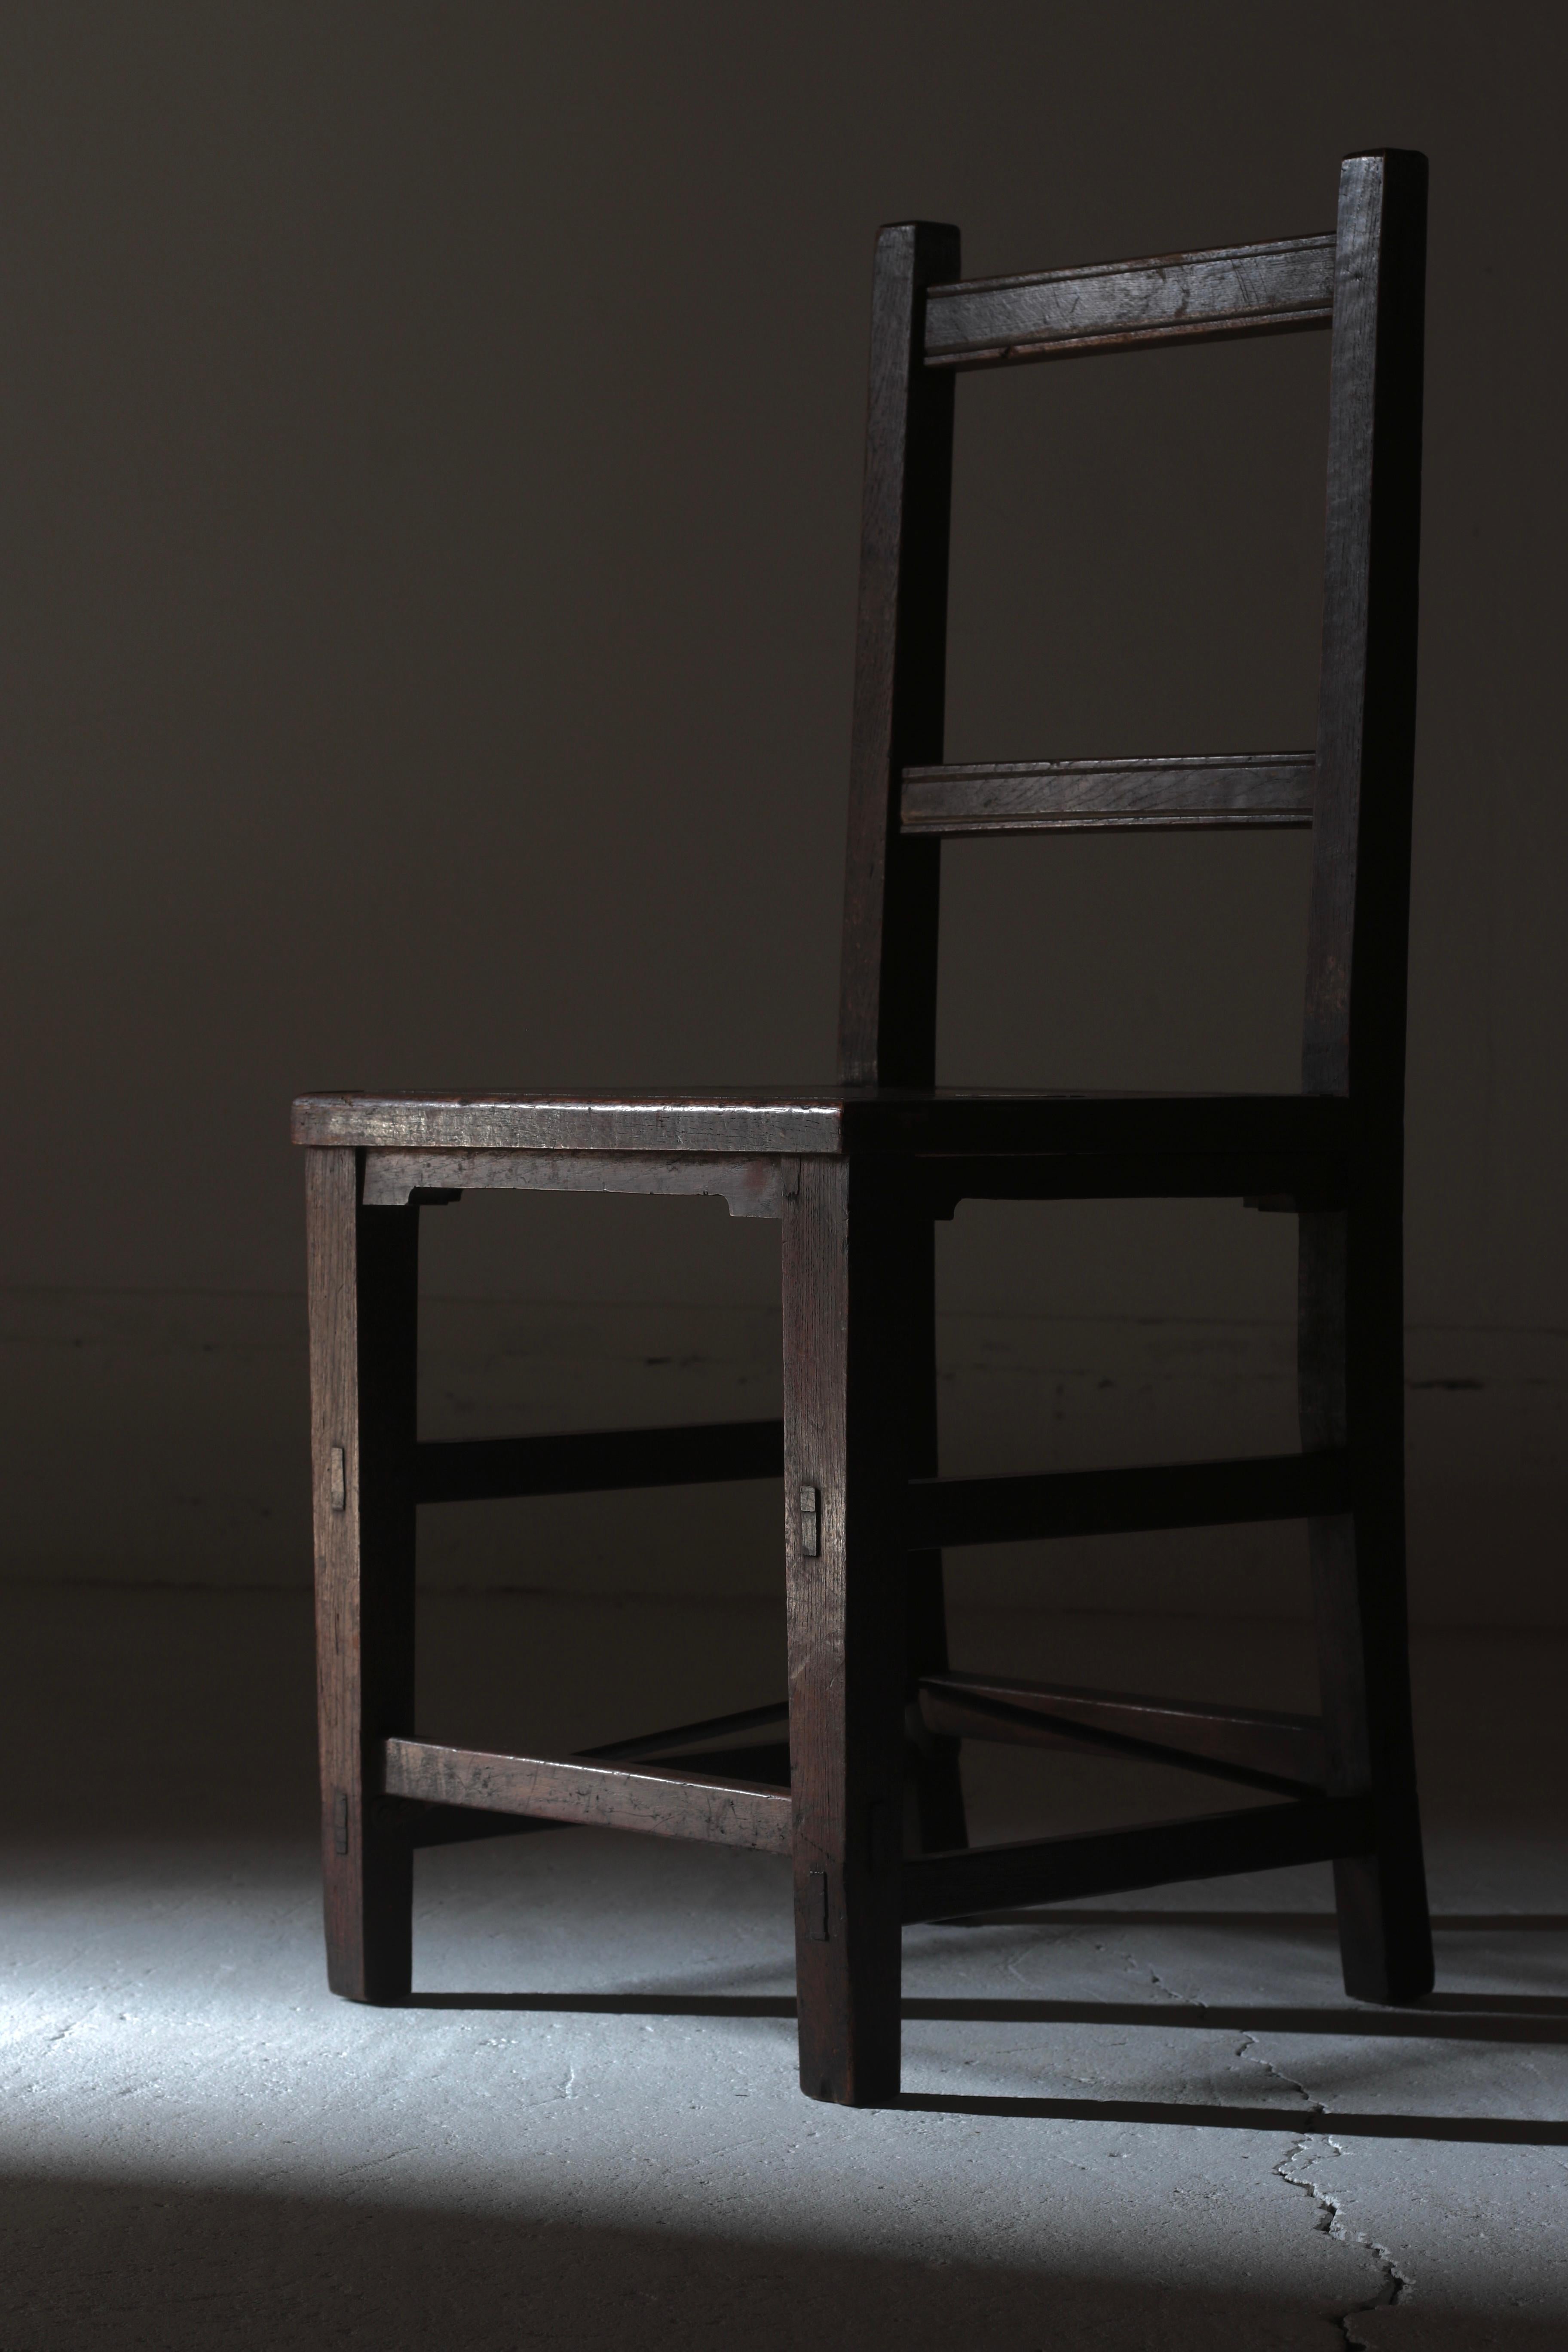 Dies ist ein alter japanischer Holzstuhl.

Zelkova wird sowohl für Rahmen als auch für Platten verwendet.

Die quadratische Form macht einen sehr einfachen Eindruck.

Die Beine werden von einer Eisenstange gestützt, was eine seltene Konstruktion